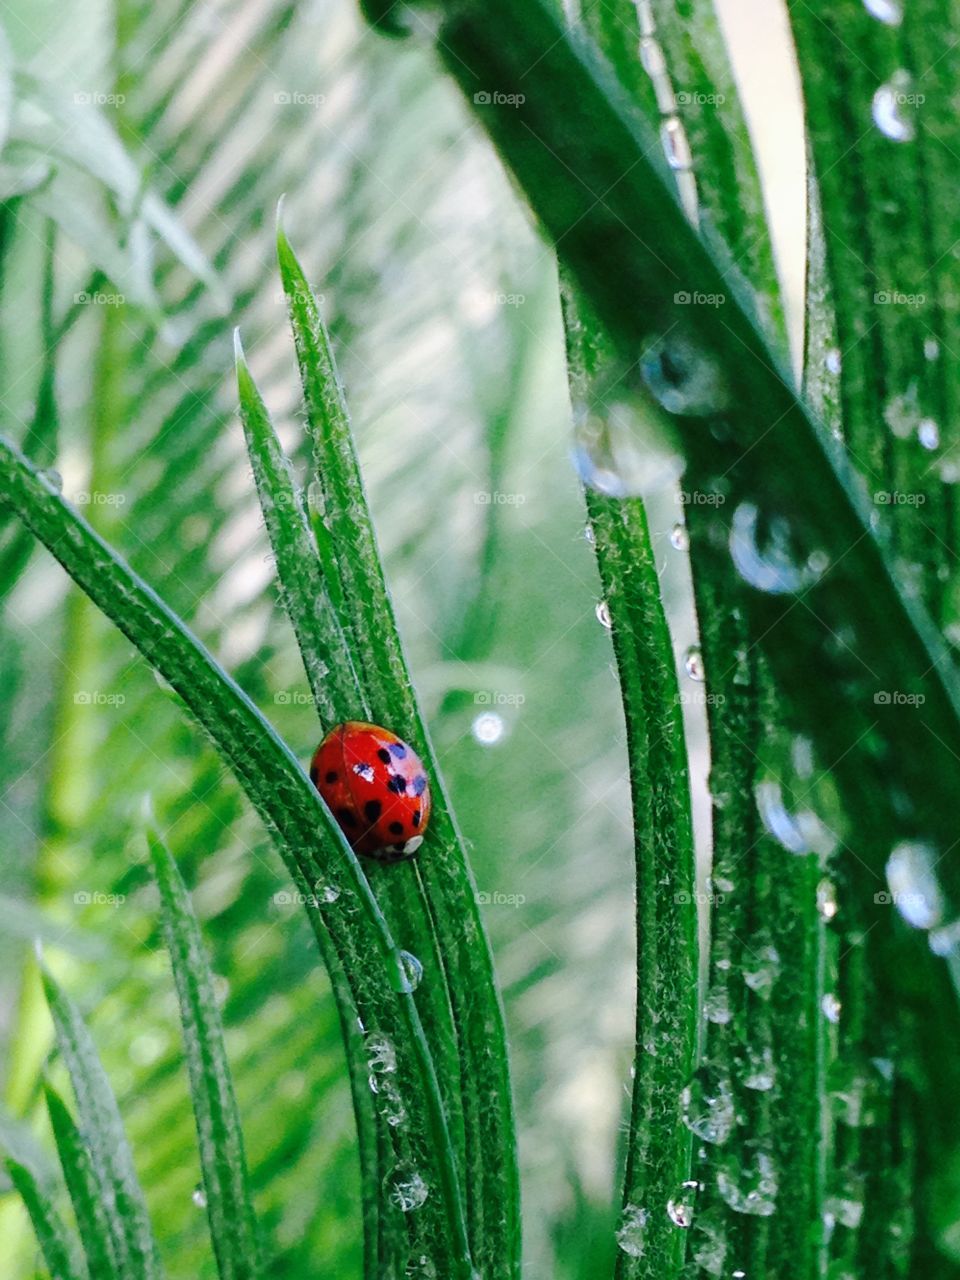 Ladybug and morning dew 